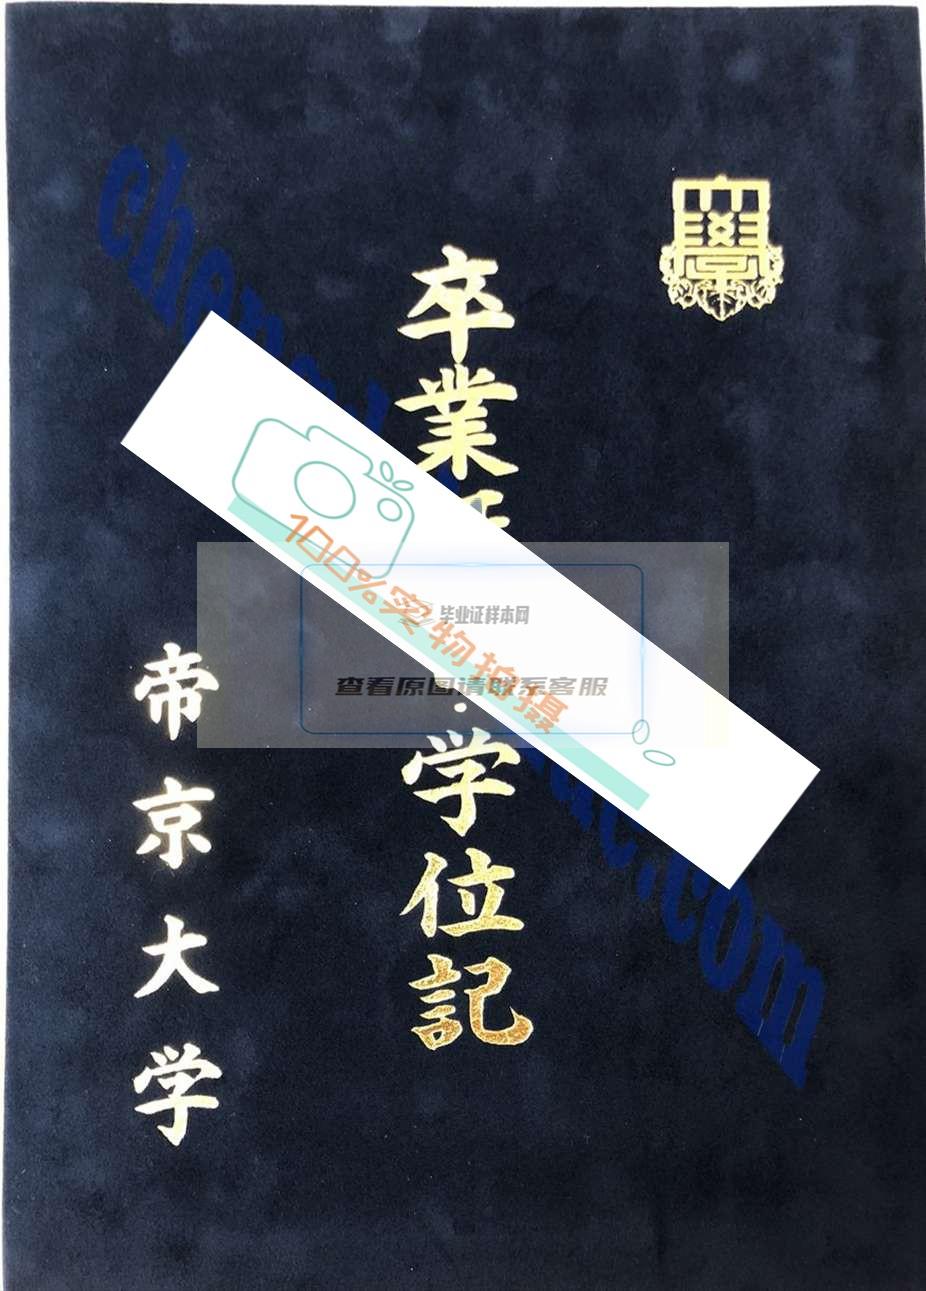 获取高清电子版图片，轻松验证帝京大学毕业证的真实性。插图2